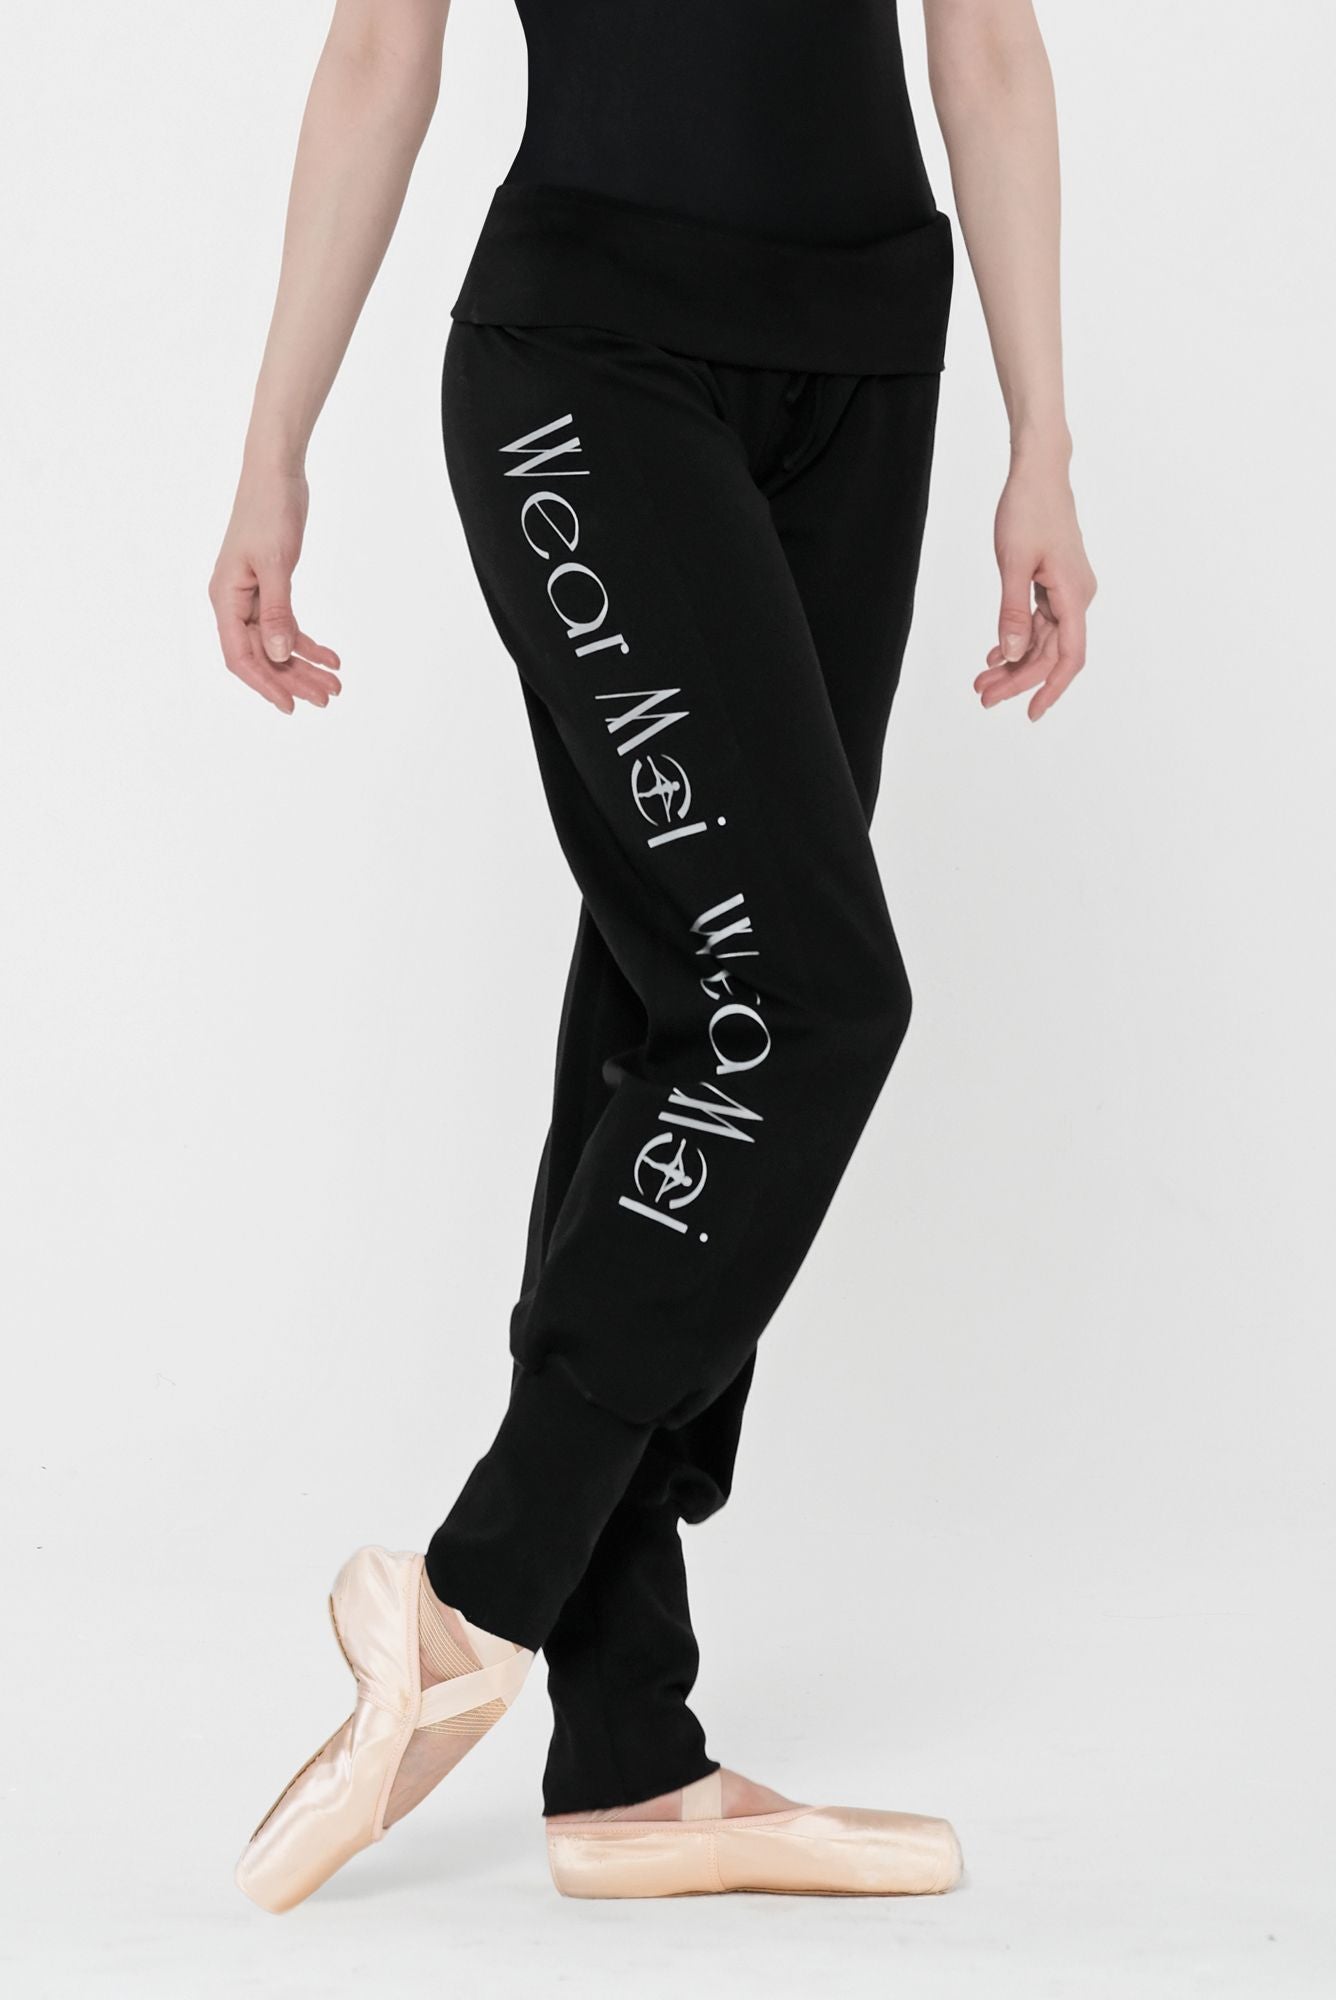 Comprar online Pantalón de chándal PANDORA de Wear Moi YoBailo.Shop